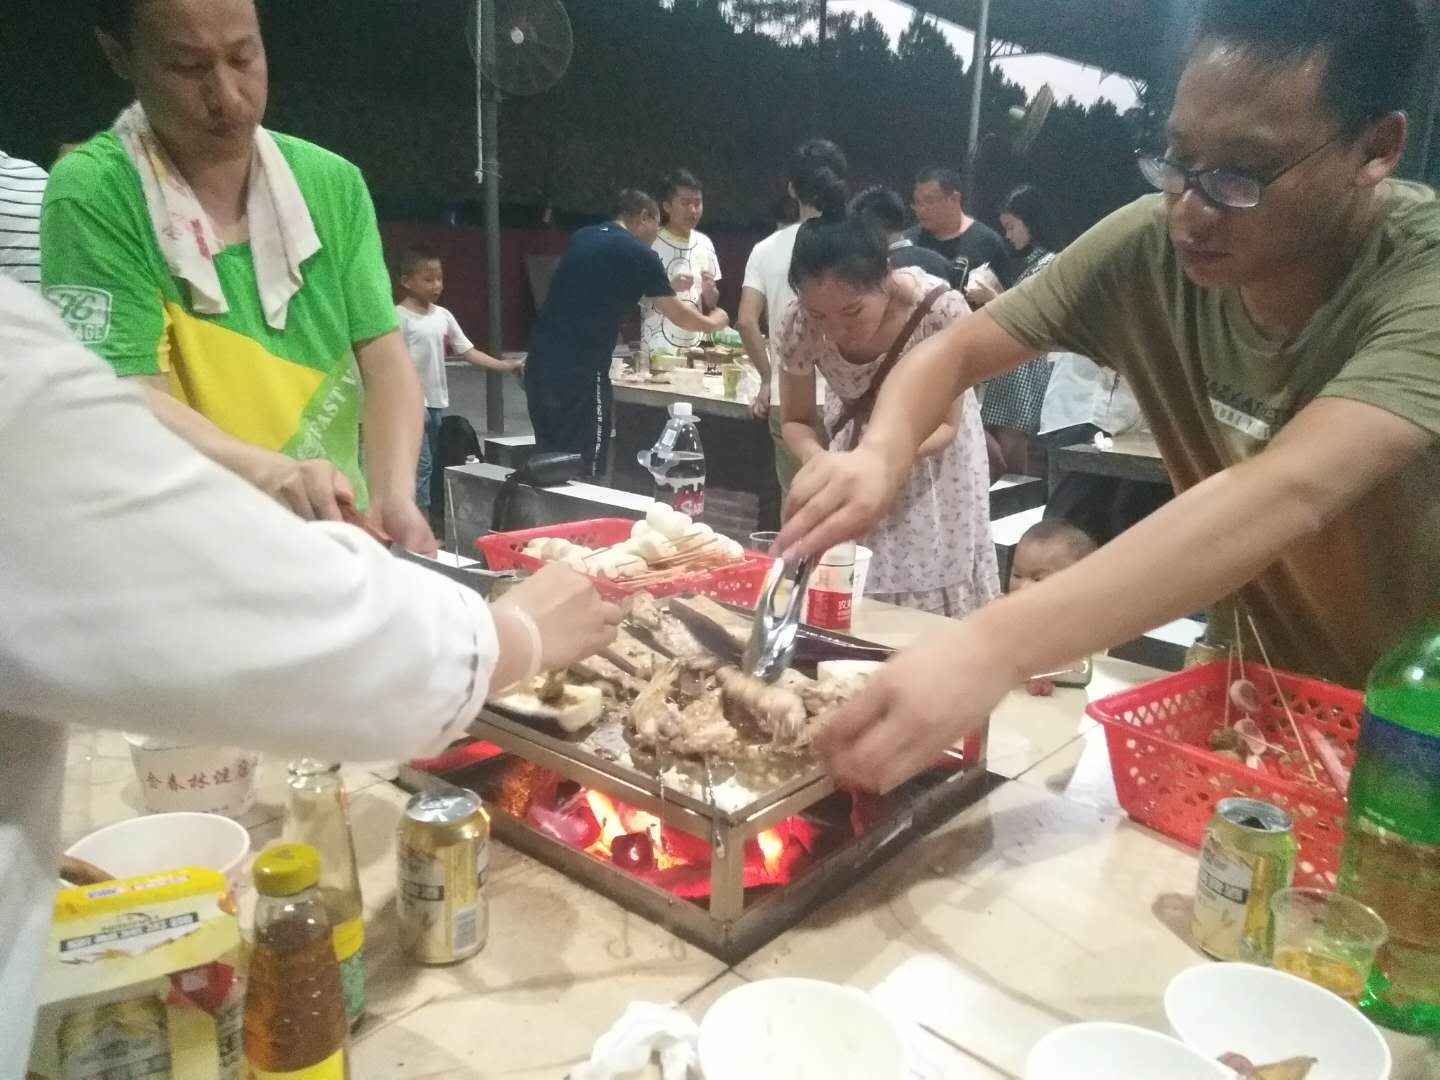 深圳凤凰山农家乐自驾游体验一日野炊自助烧烤